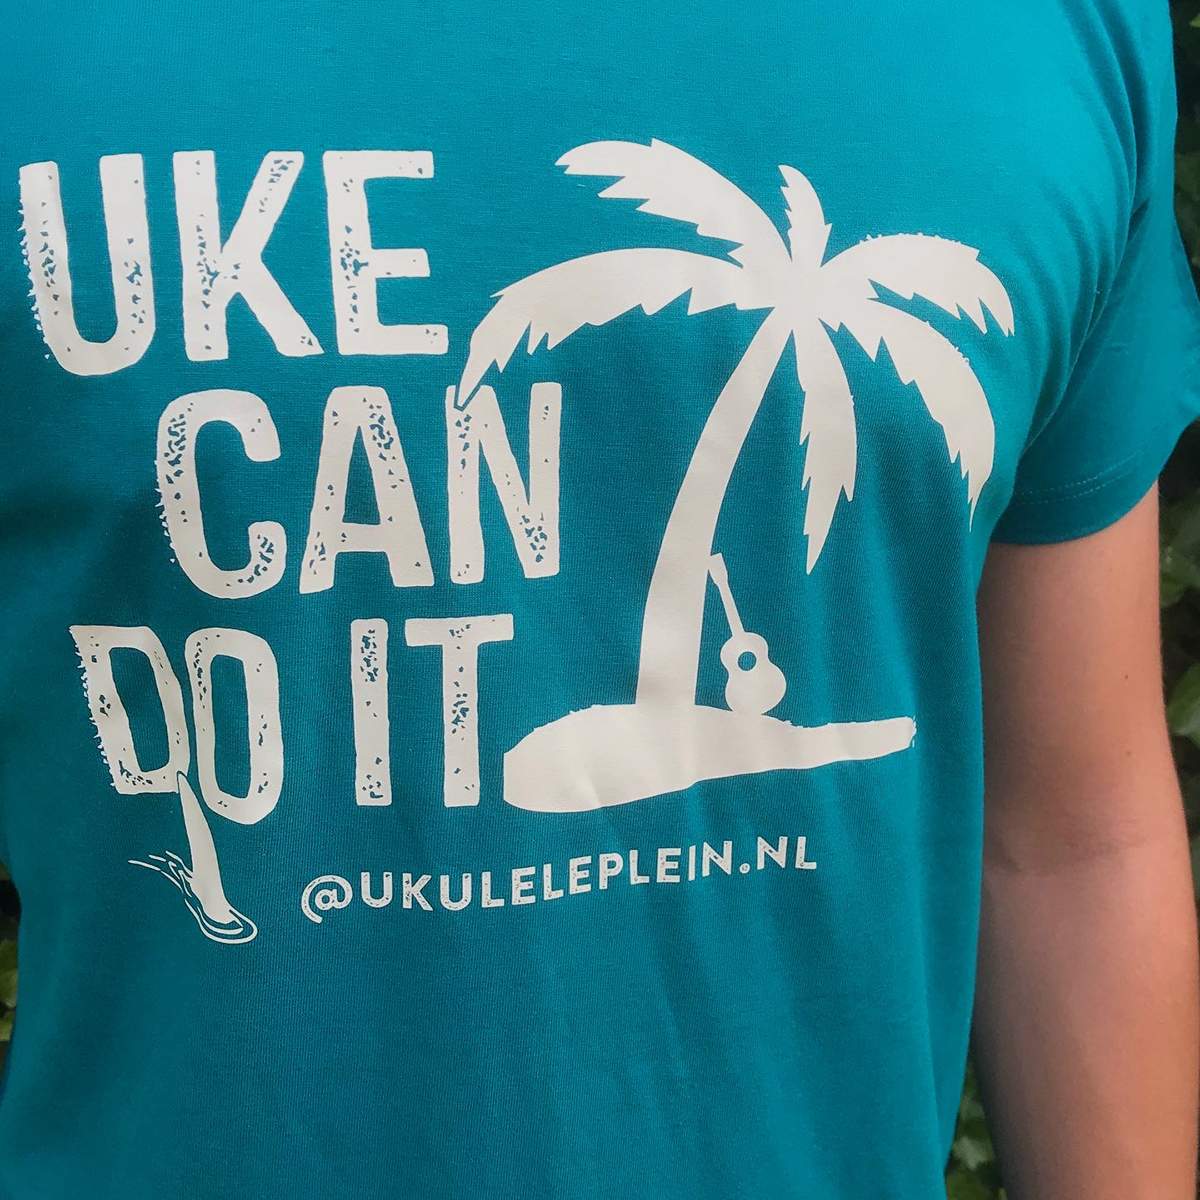 Uke can do it shirt [unisex]